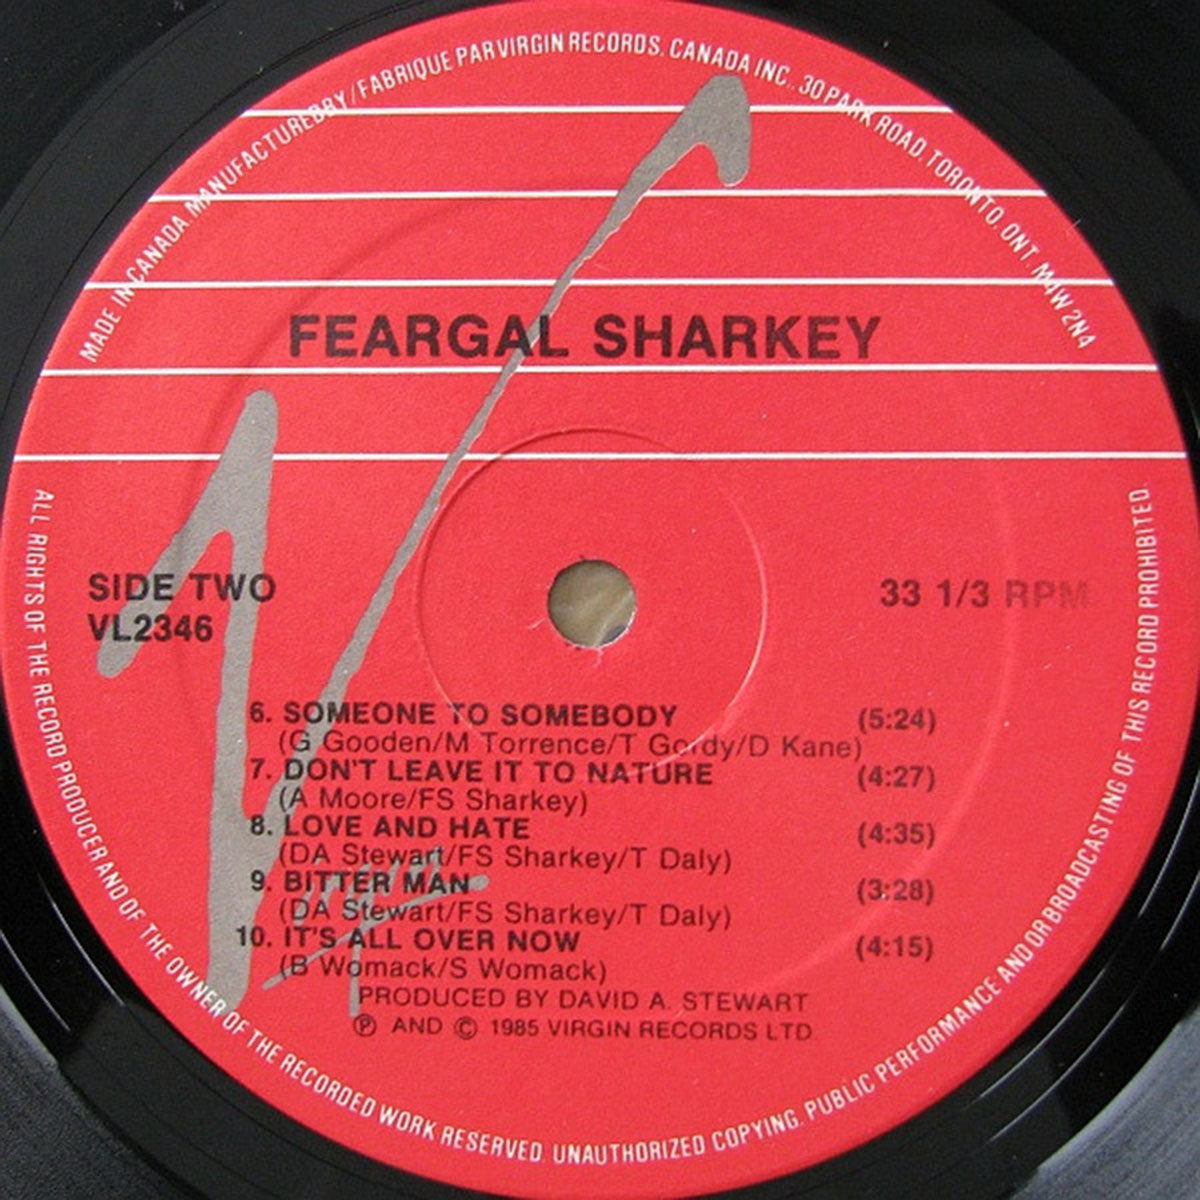 Feargal Sharkey – Feargal Sharkey